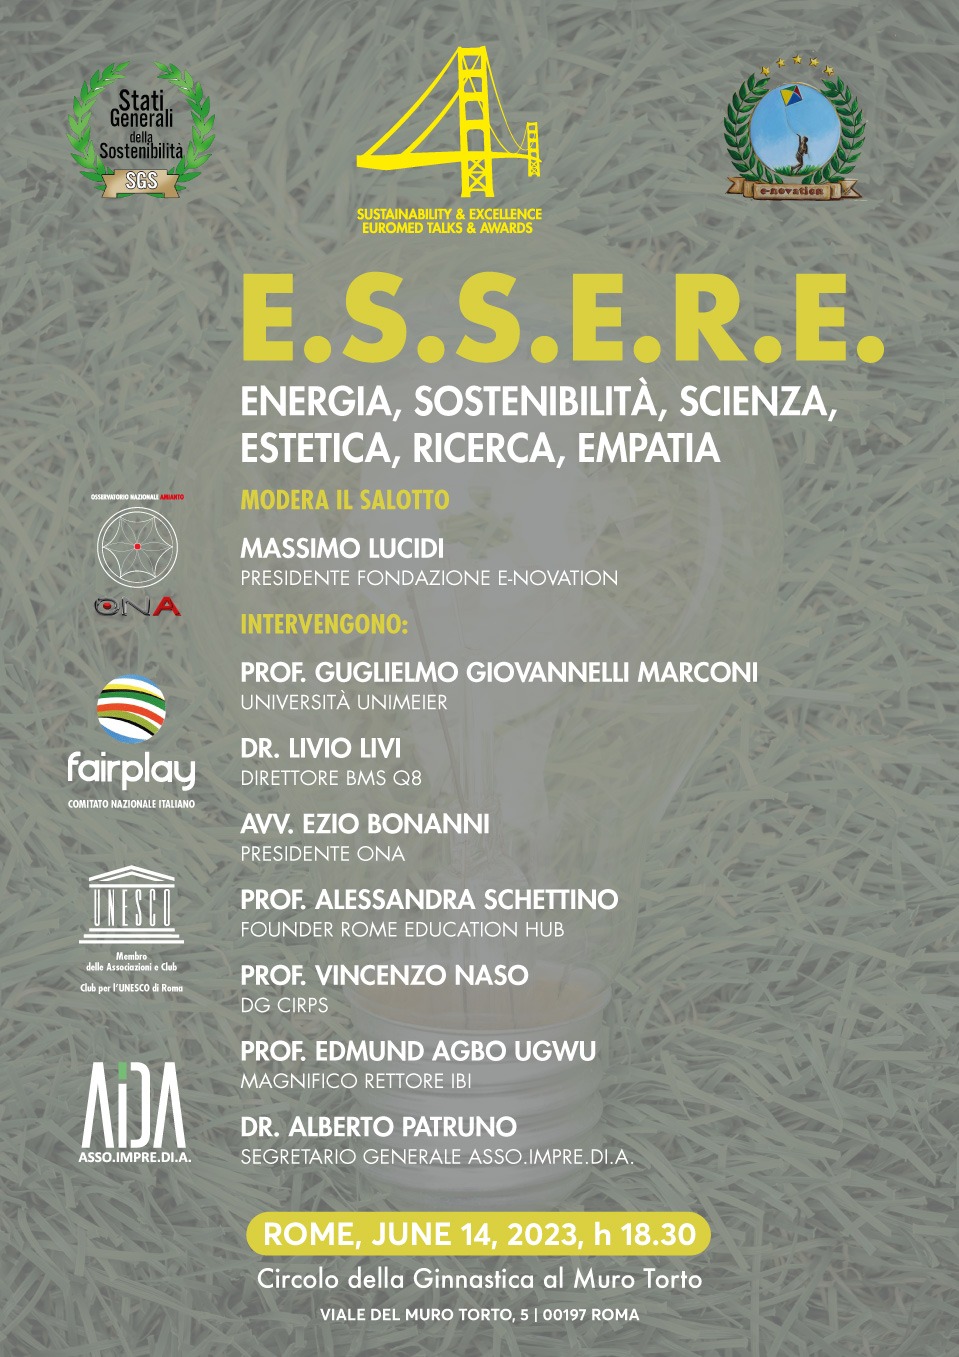 ENERGIE: E.S.S.E.R.E. ITALIA PER OFFRIRE BELLEZZA